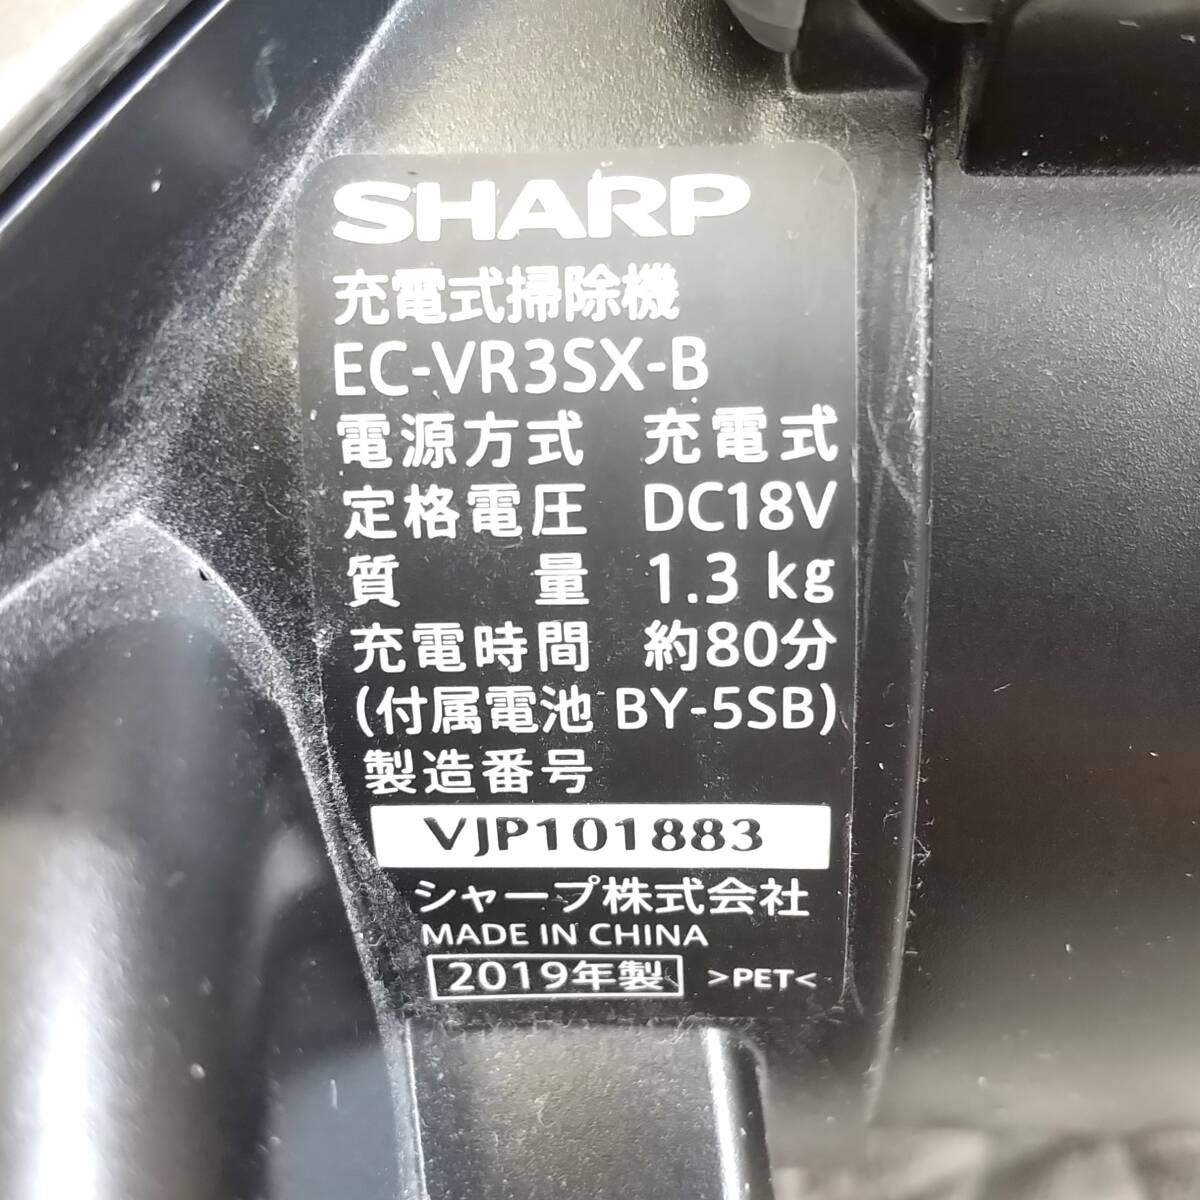 【411】中古品 シャープ コードレスクリーナー EC-VR35X-B 2019年製_画像5